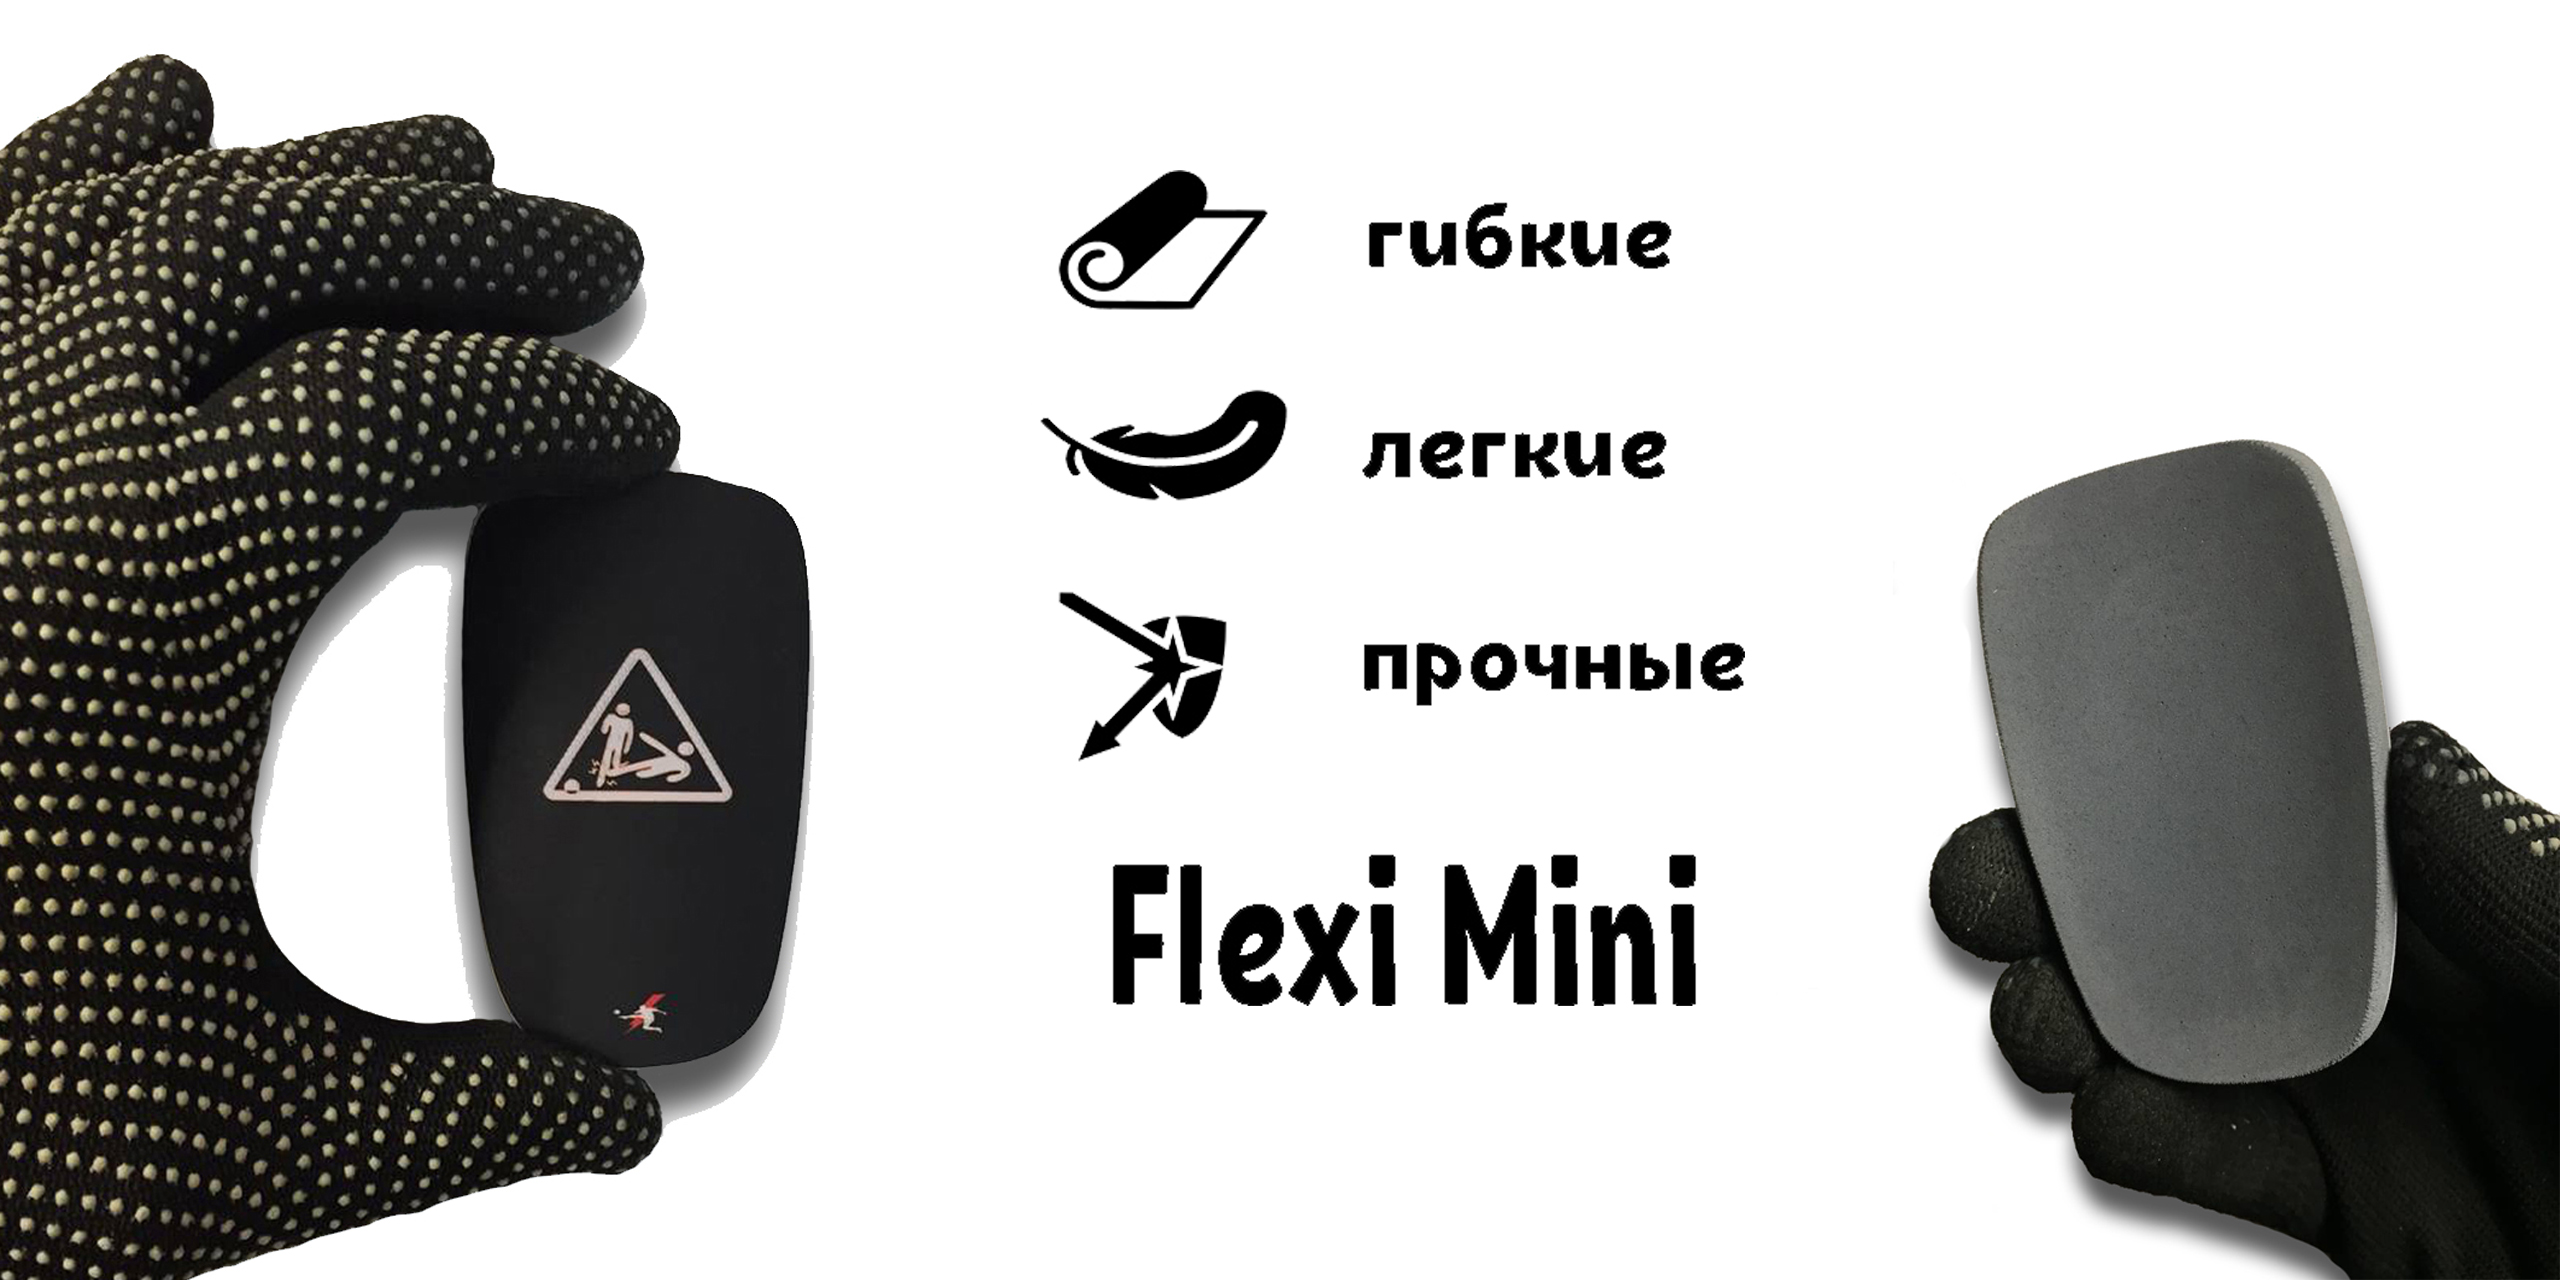 FLEXI MINI - гибкие мини щитки